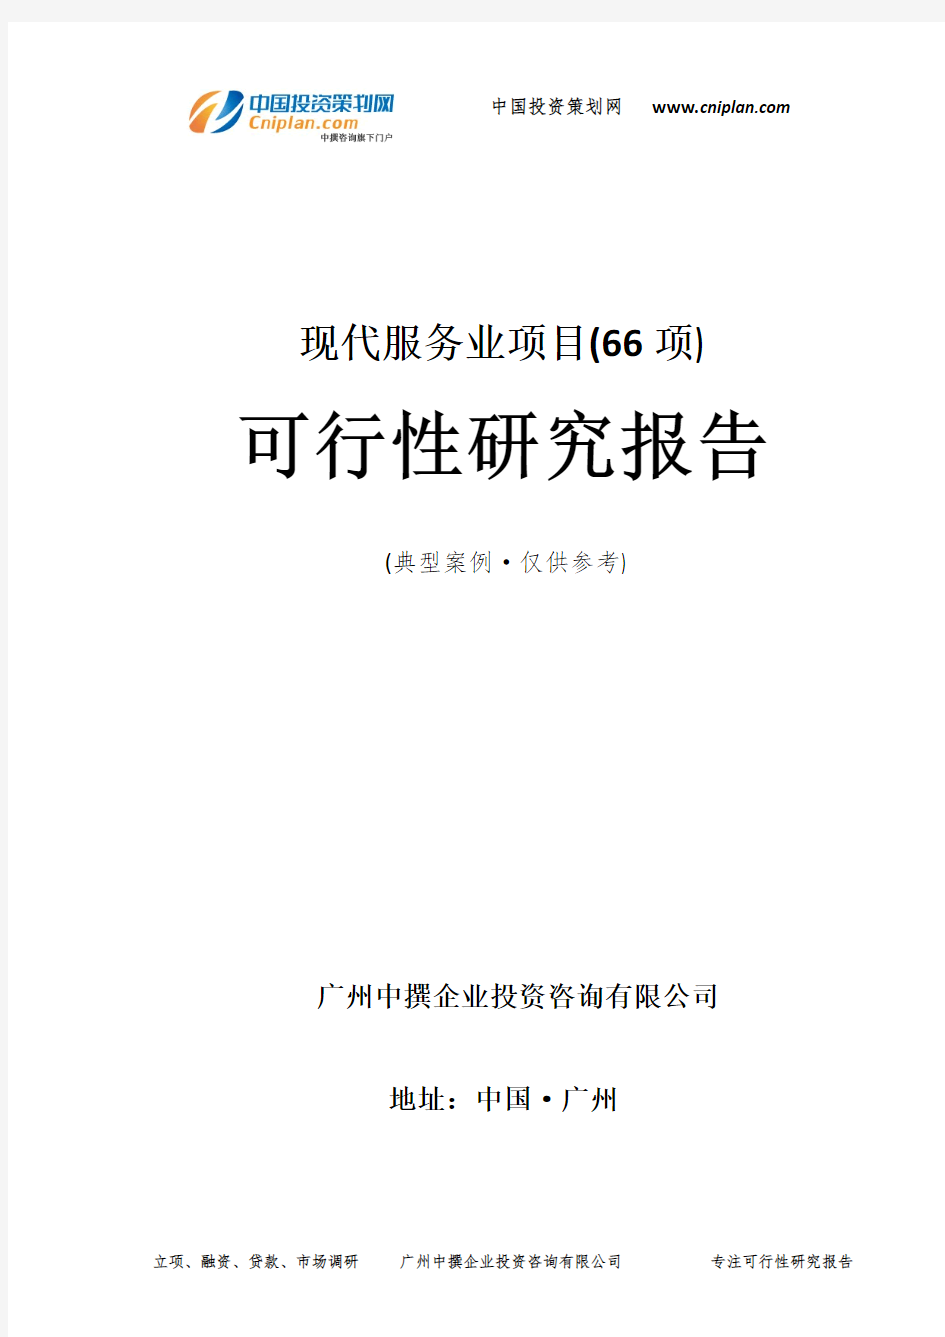 现代服务业项目(66项)可行性研究报告-广州中撰咨询